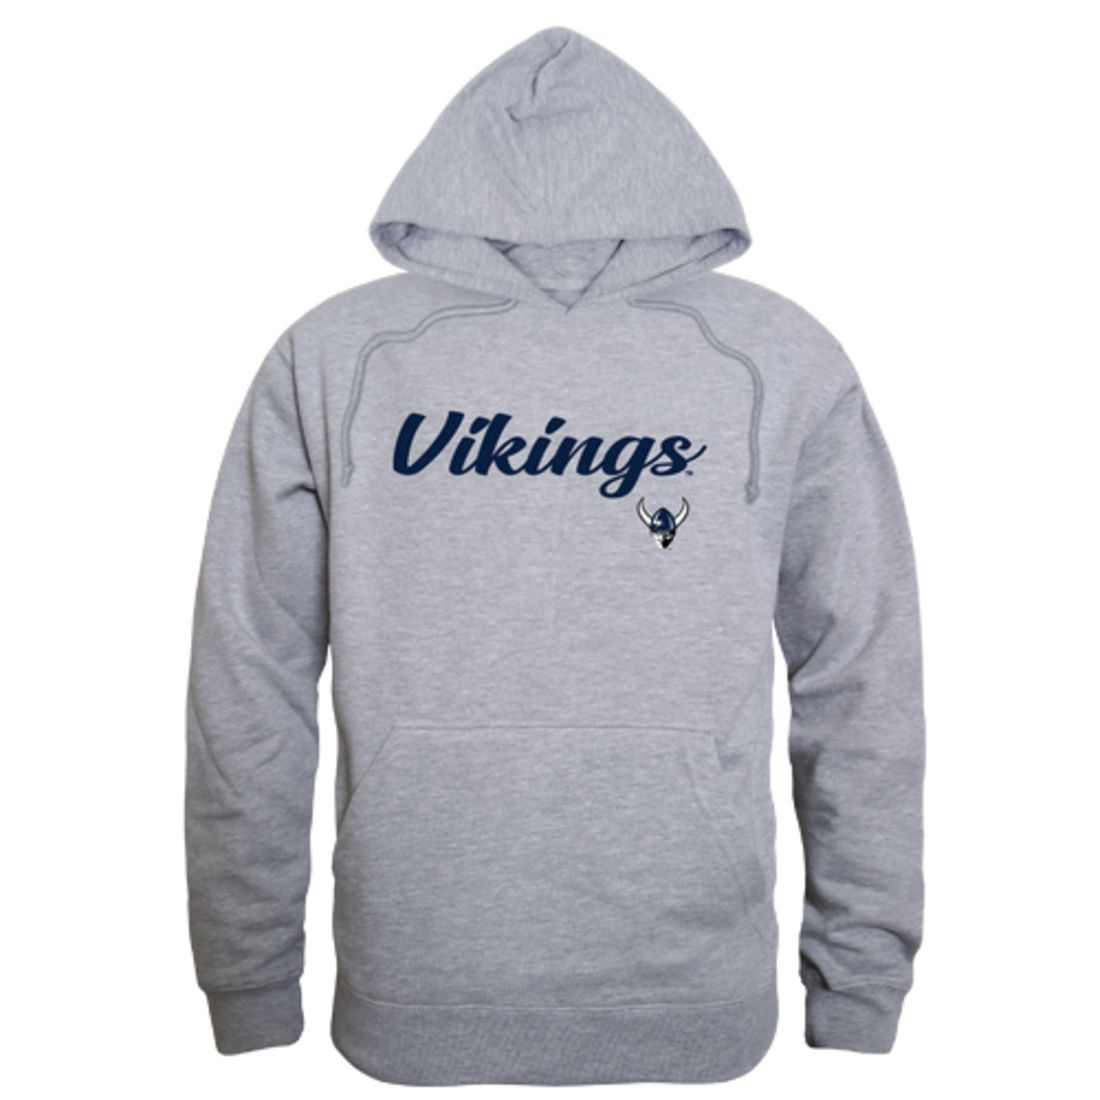 WWU Western Washington University Vikings Mens Script Hoodie Sweatshirt Black-Campus-Wardrobe